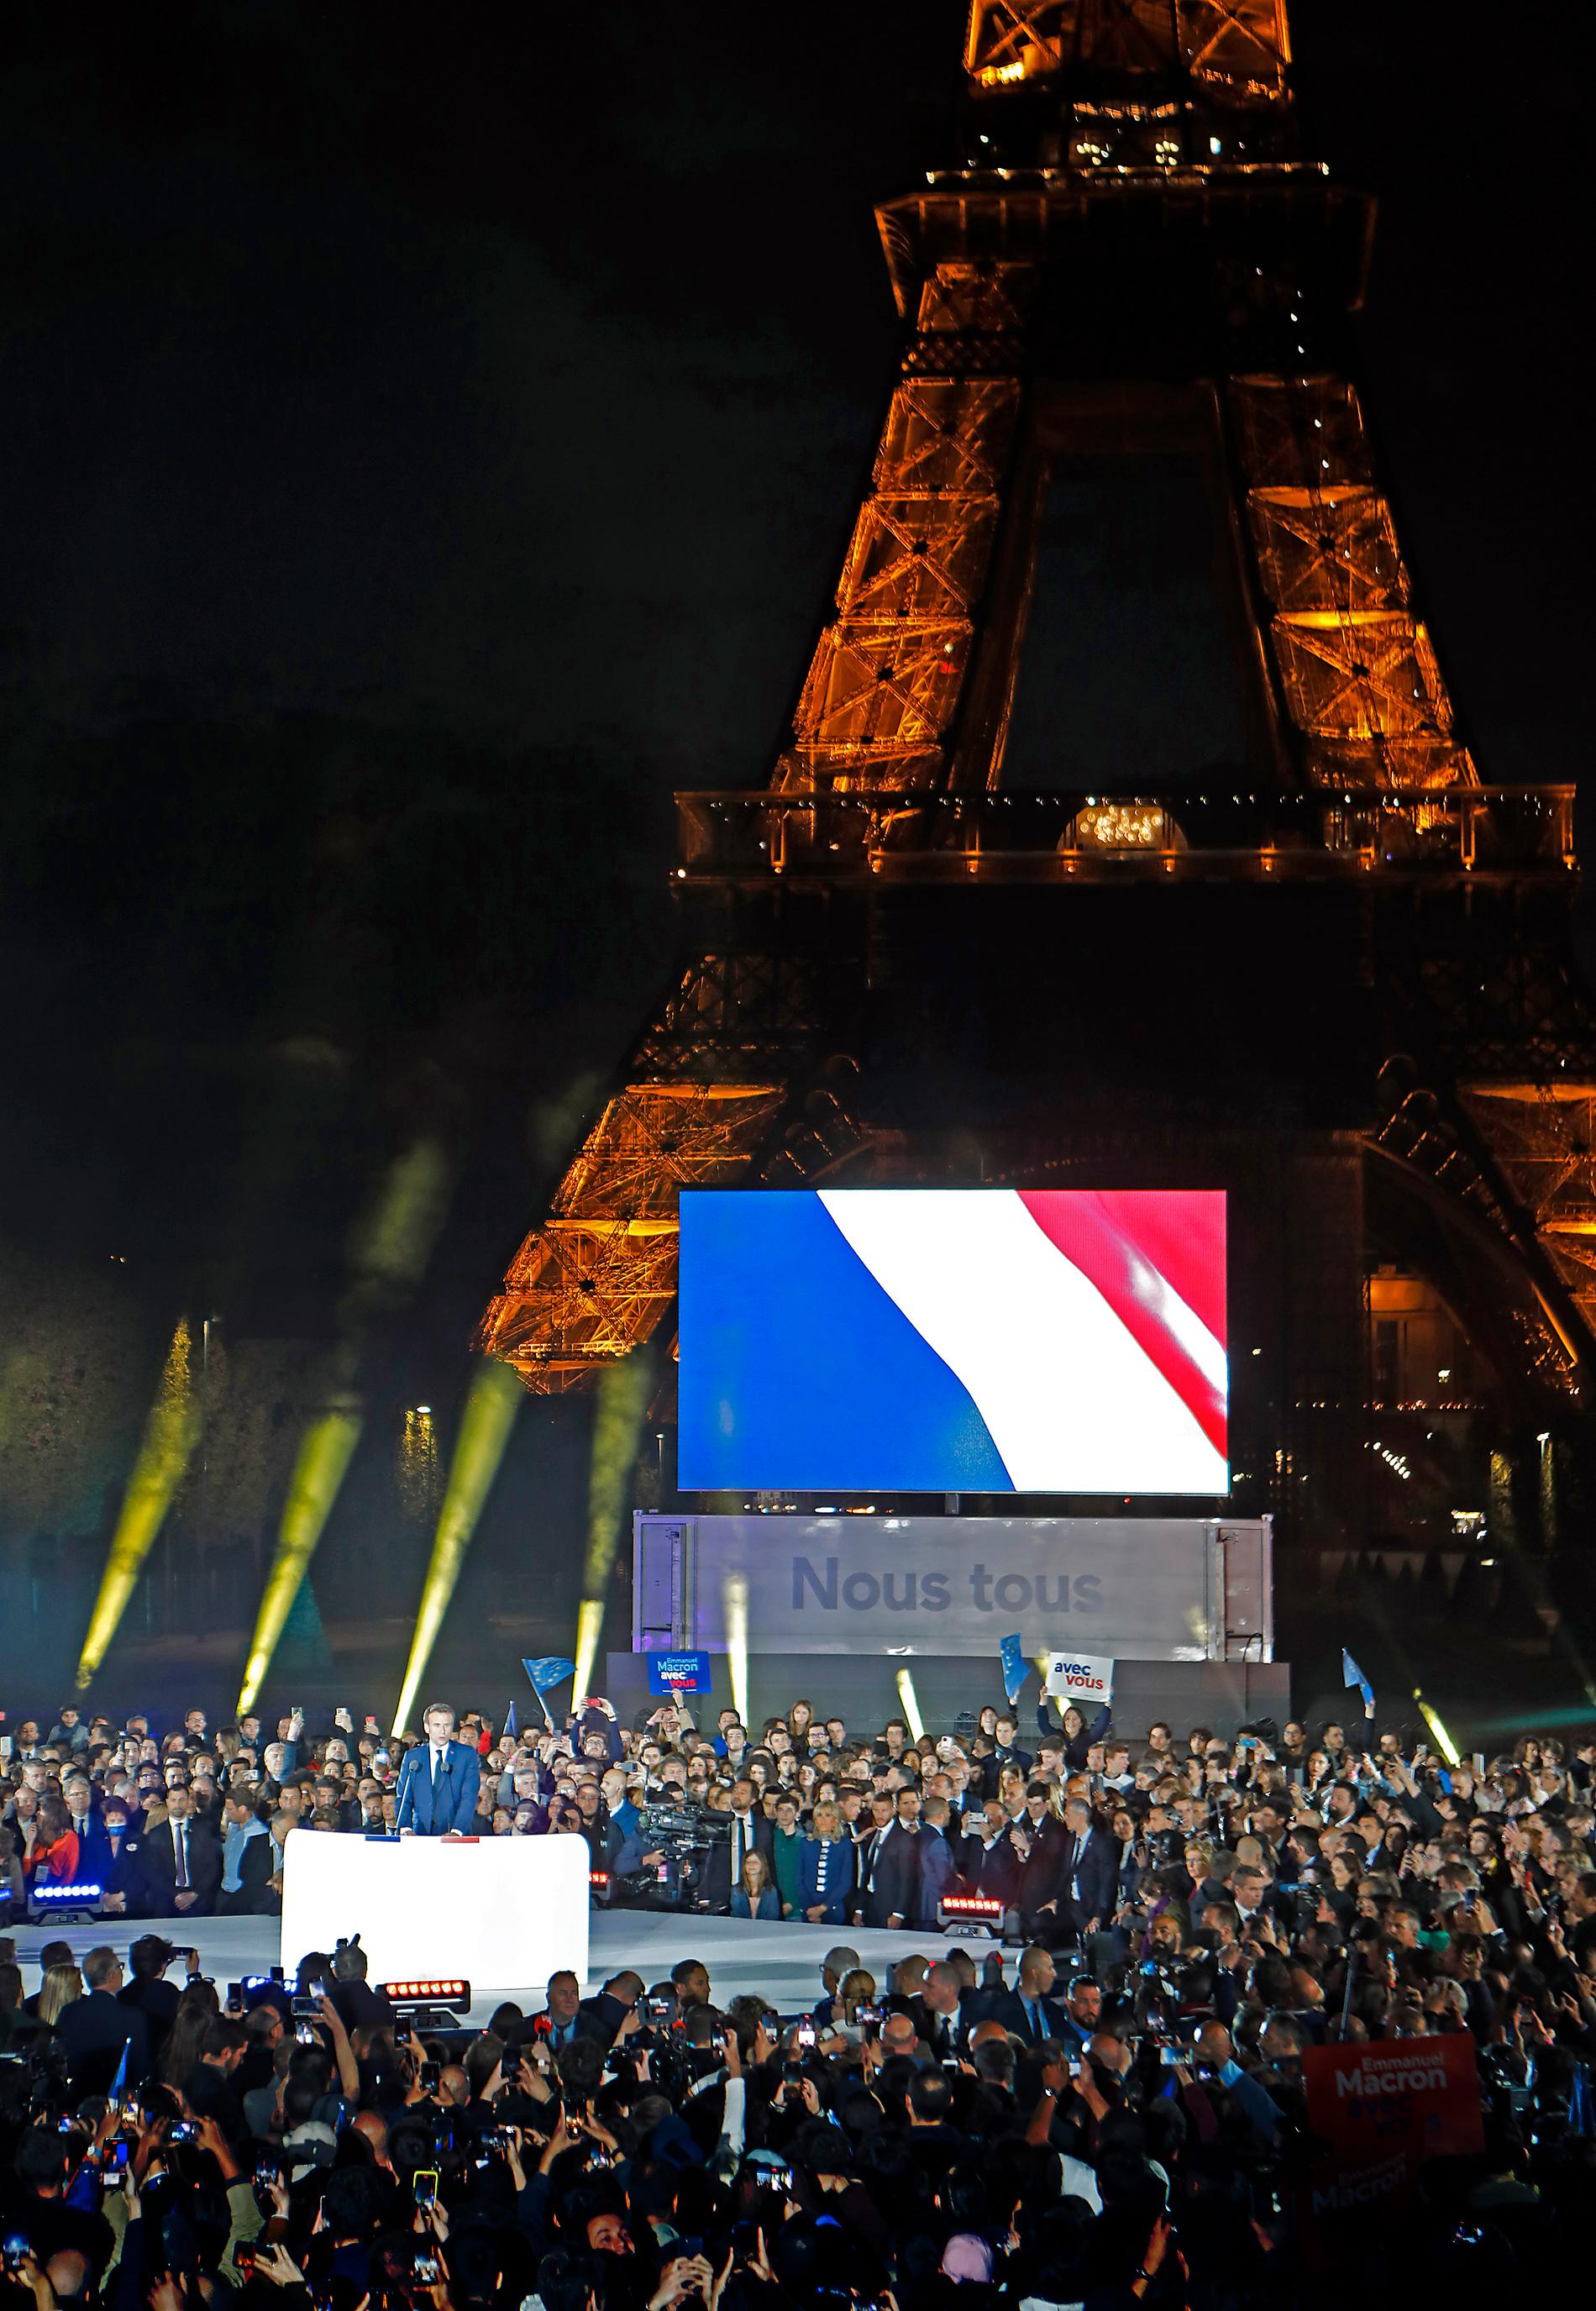 Macron höll segertalet vid det upplysta Eiffeltornet, där många anhängare hade samlats.